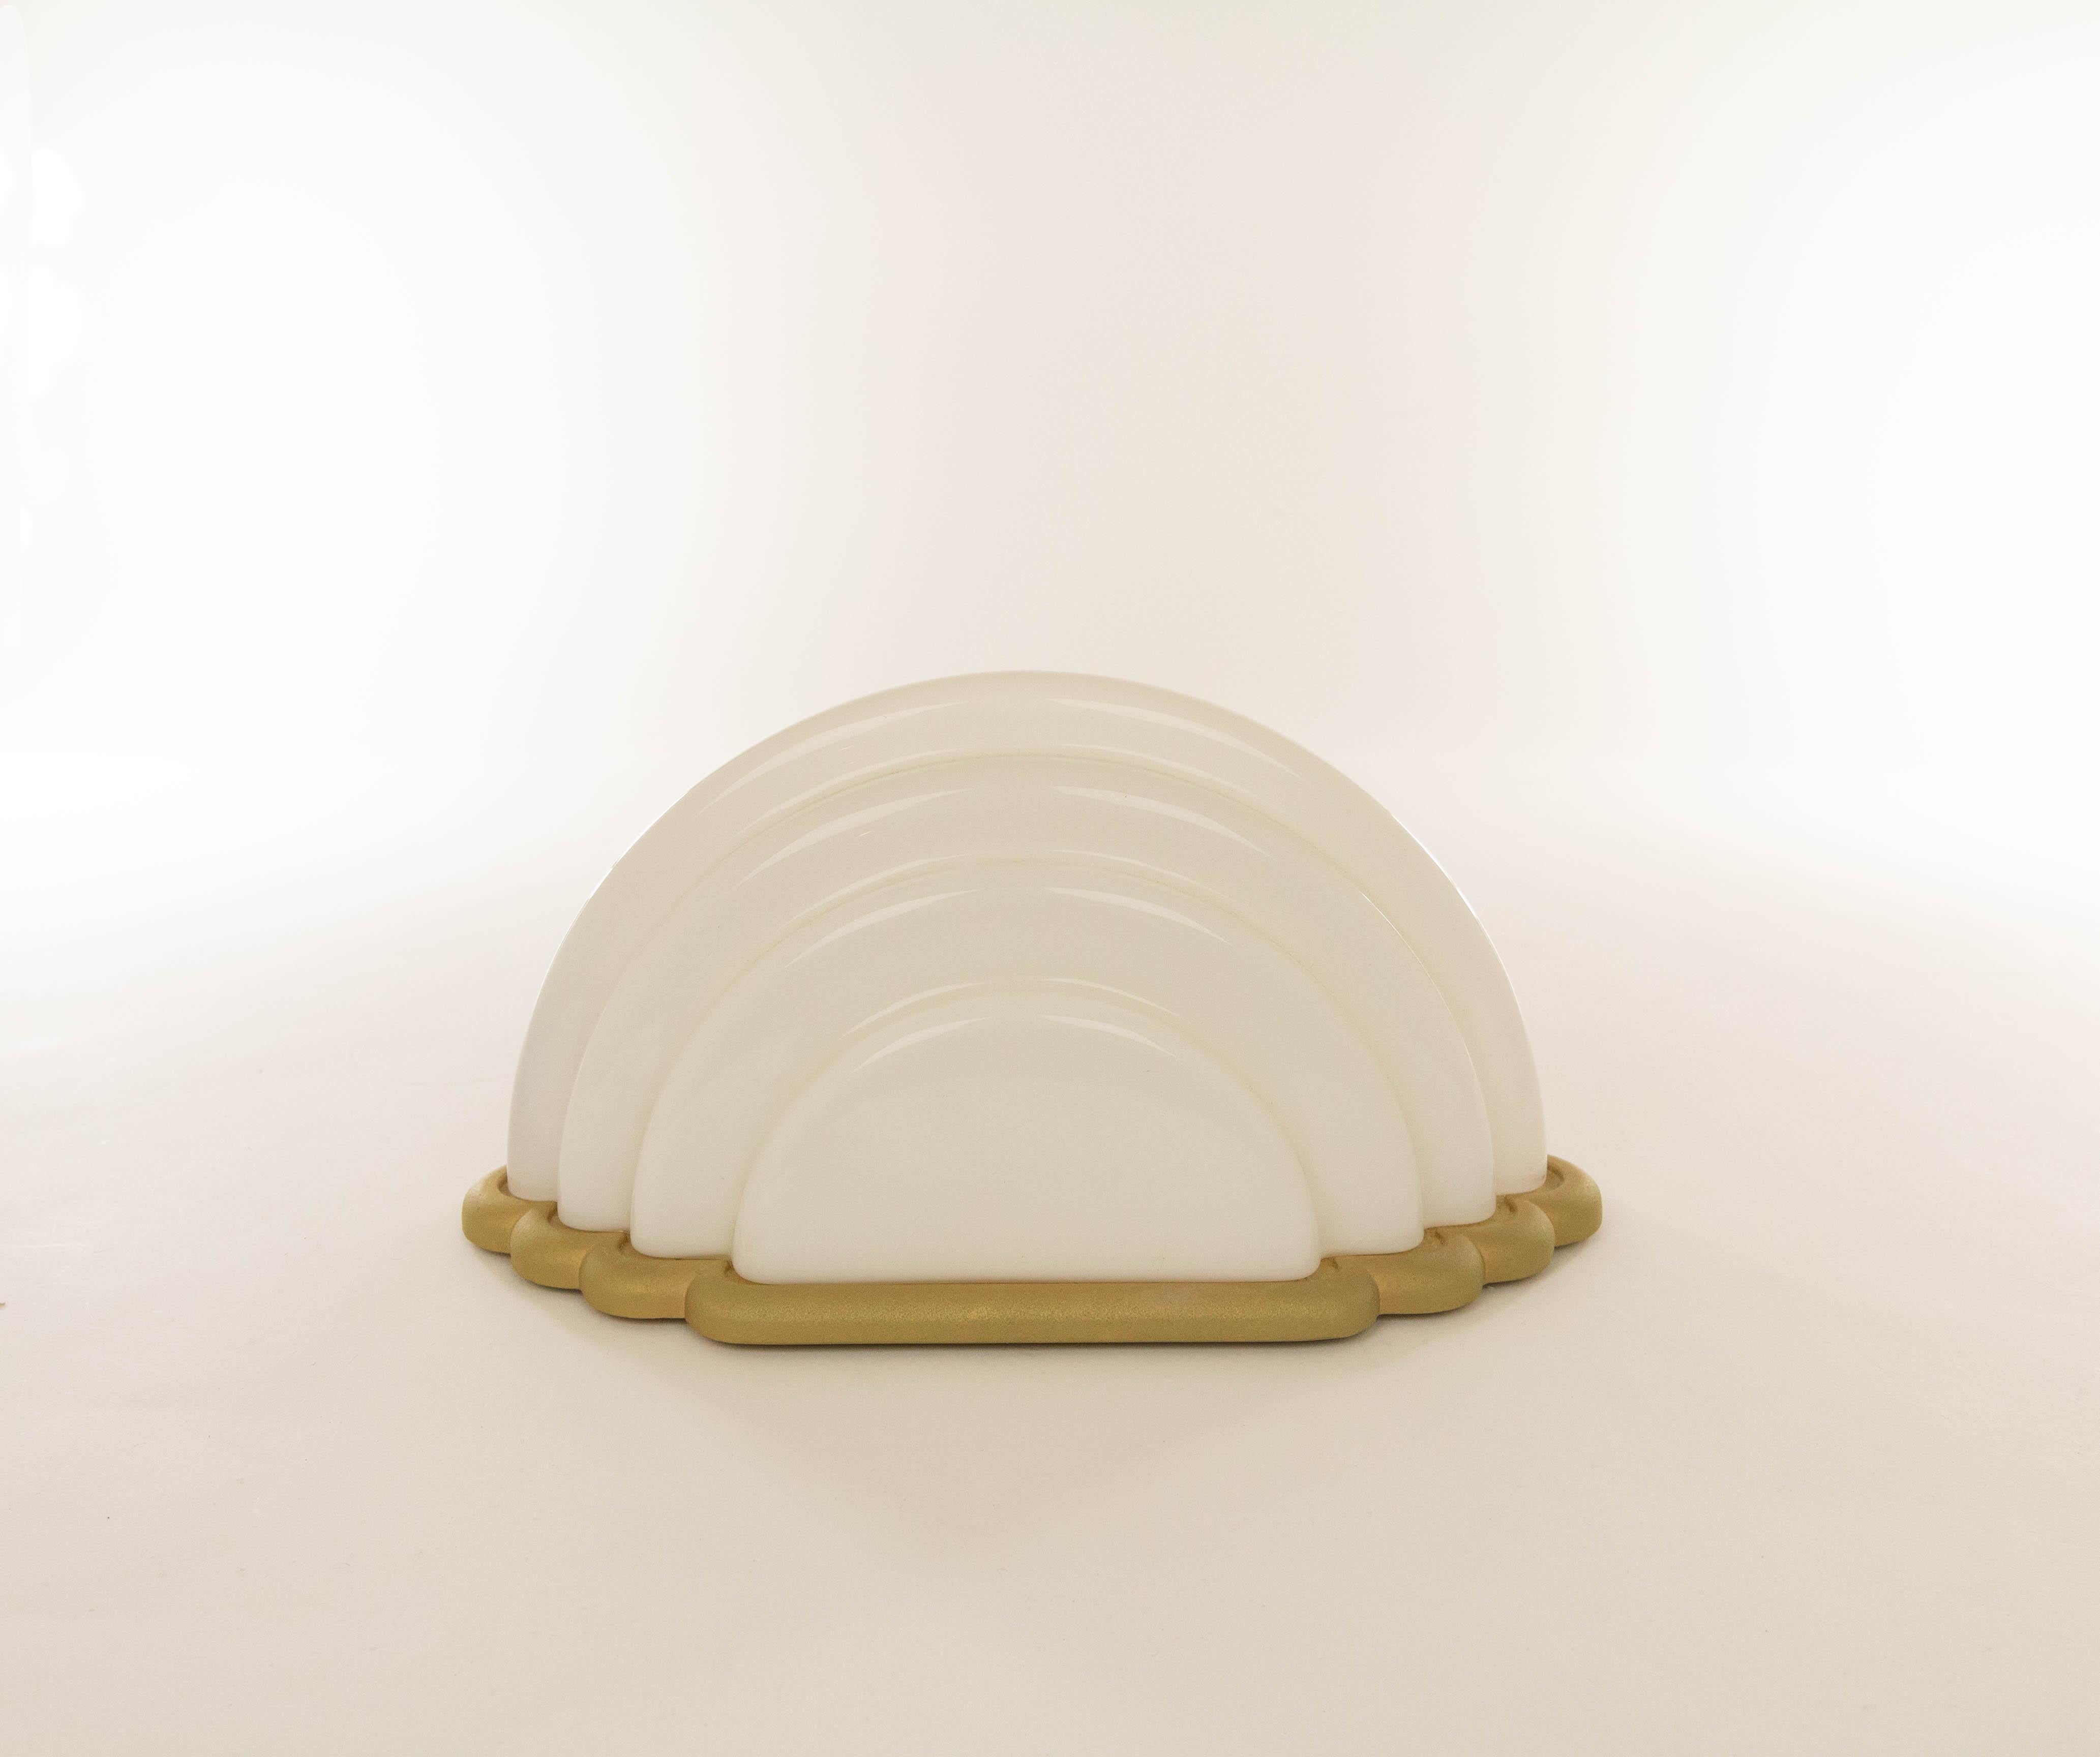 Lampe de table Kumo conçue par Kazuhide Takahama et produite par Sirrah en 1985.

Le modèle se compose d'un abat-jour en verre opalin et d'une base en métal de couleur or rare.

Littérature : Domus n° 657, article 'Rassegna Speciale Euroluce',